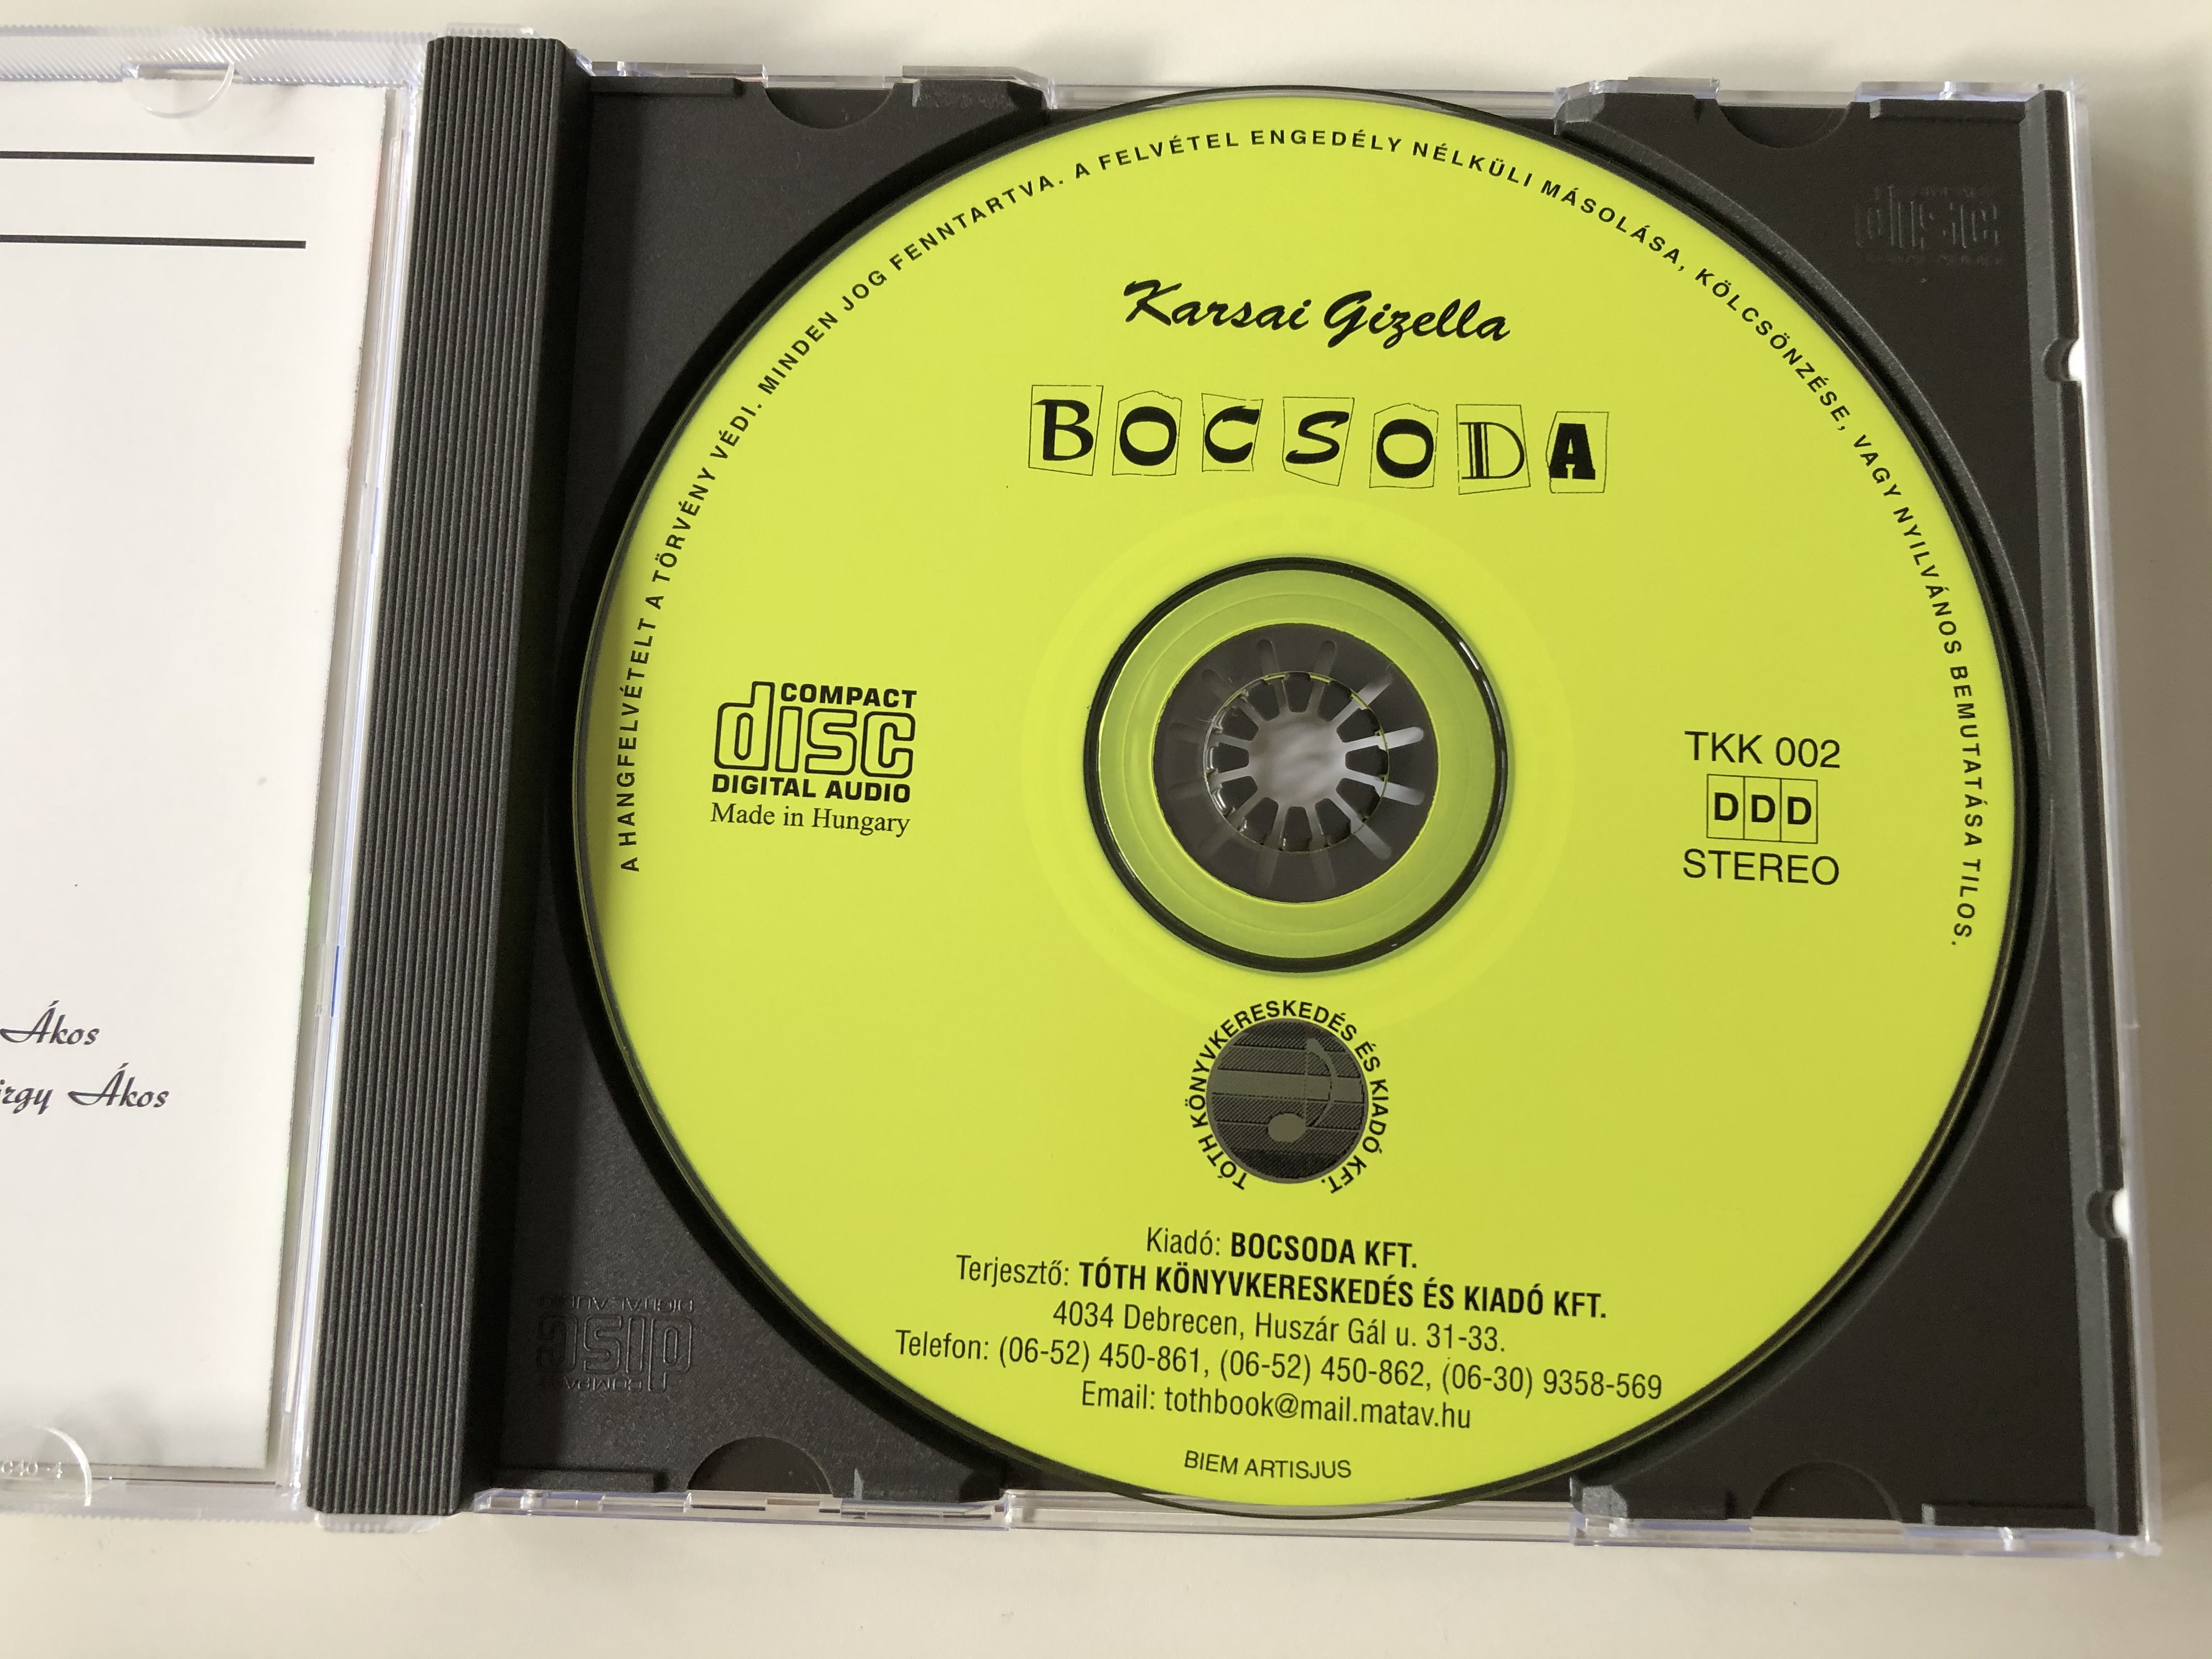 bocsoda-karsai-gizella-bocsoda-kft.-audio-cd-stereo-tkk-002-3-.jpg